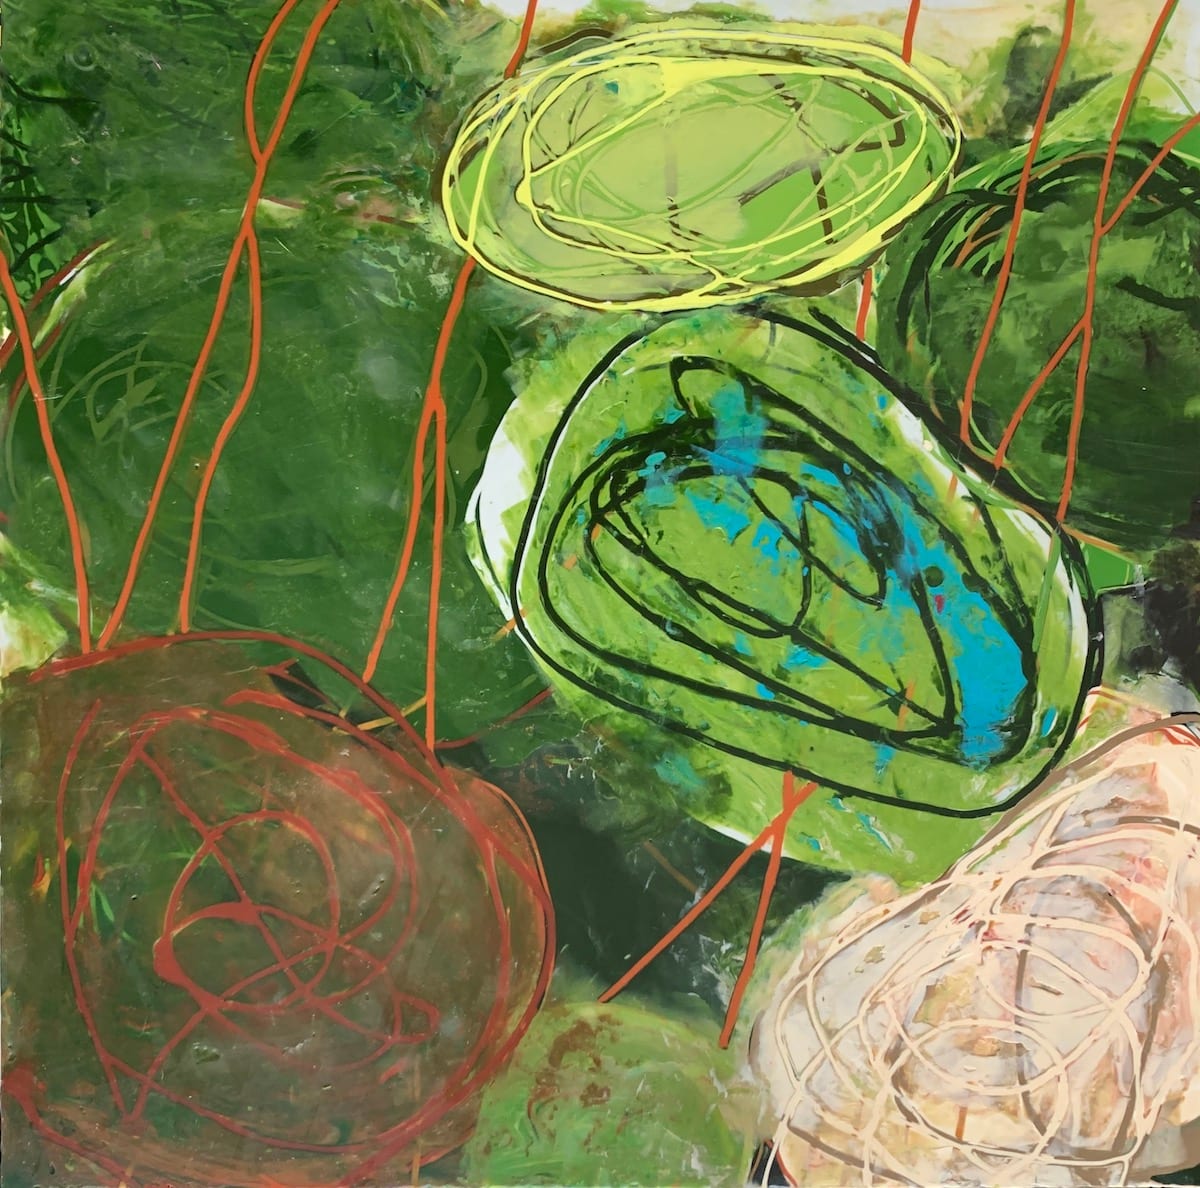 Through the Quagmire  Image: 16" x 16", encaustic on panel, 2020